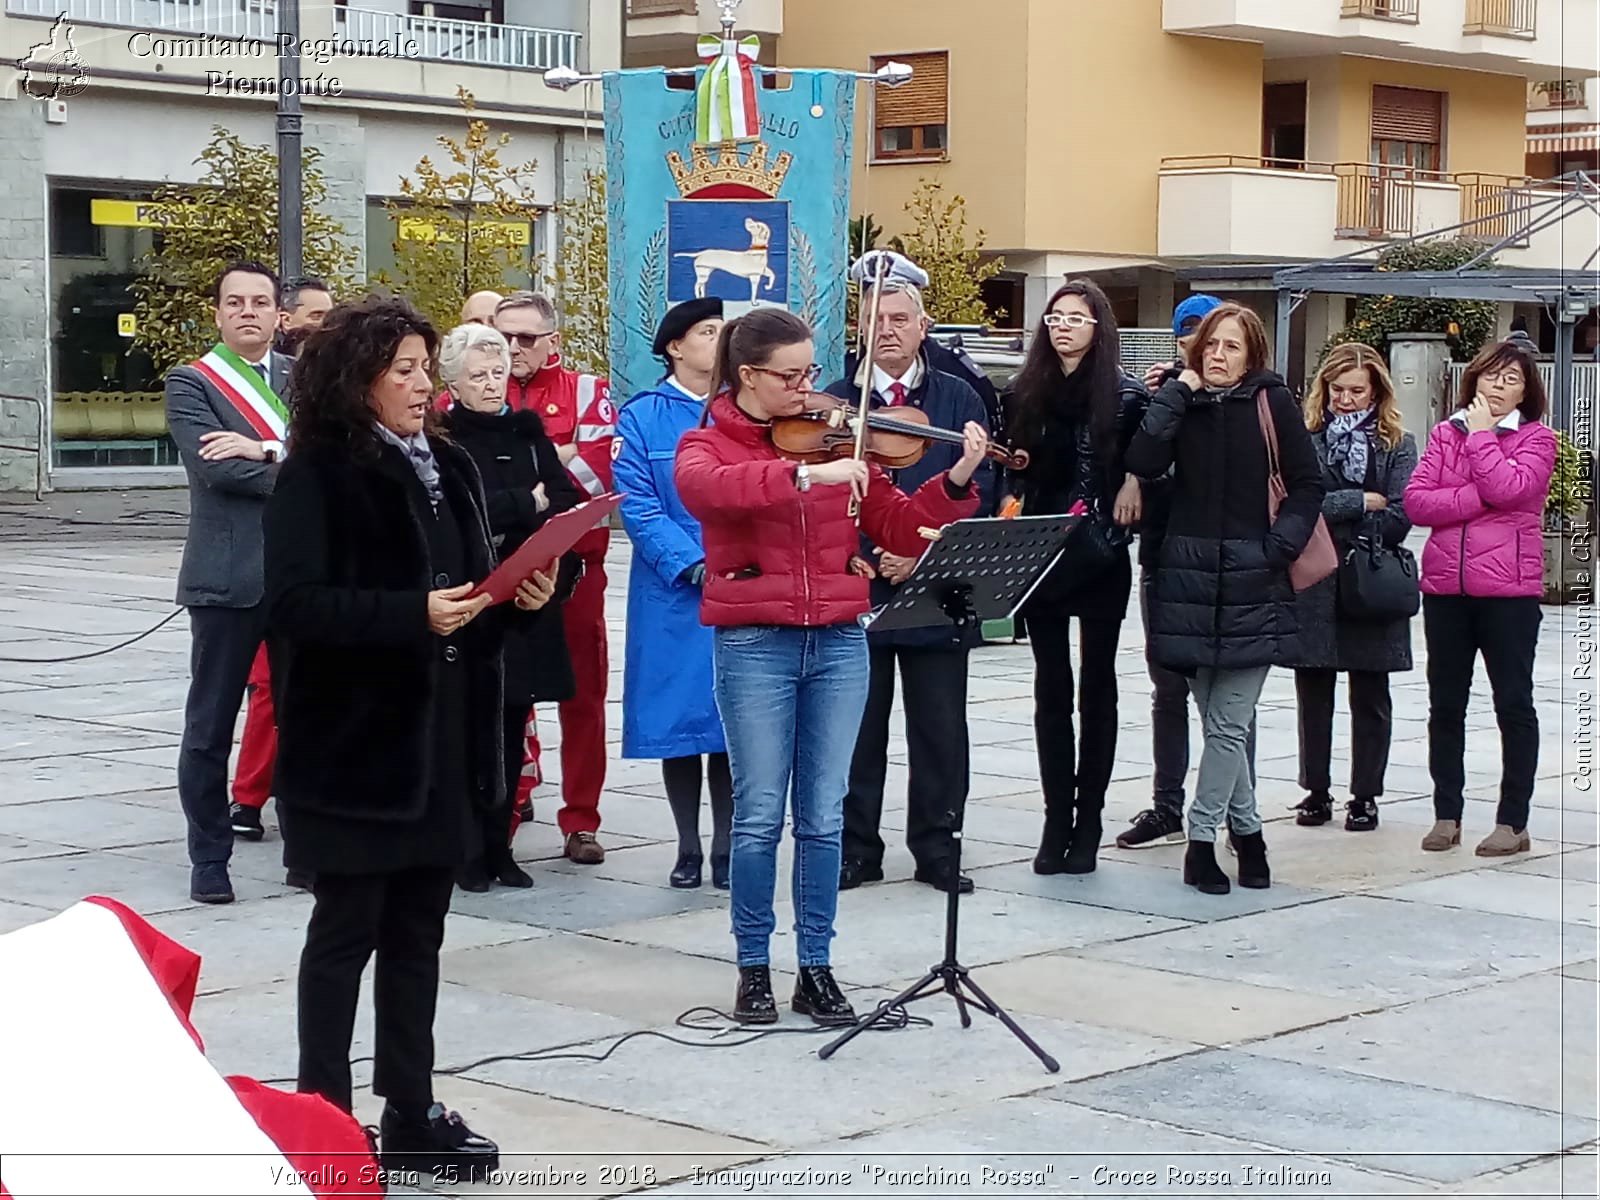 Varallo Sesia 25 Novembre 2018 - Inaugurazione "Panchina Rossa" - Croce Rossa Italiana- Comitato Regionale del Piemonte